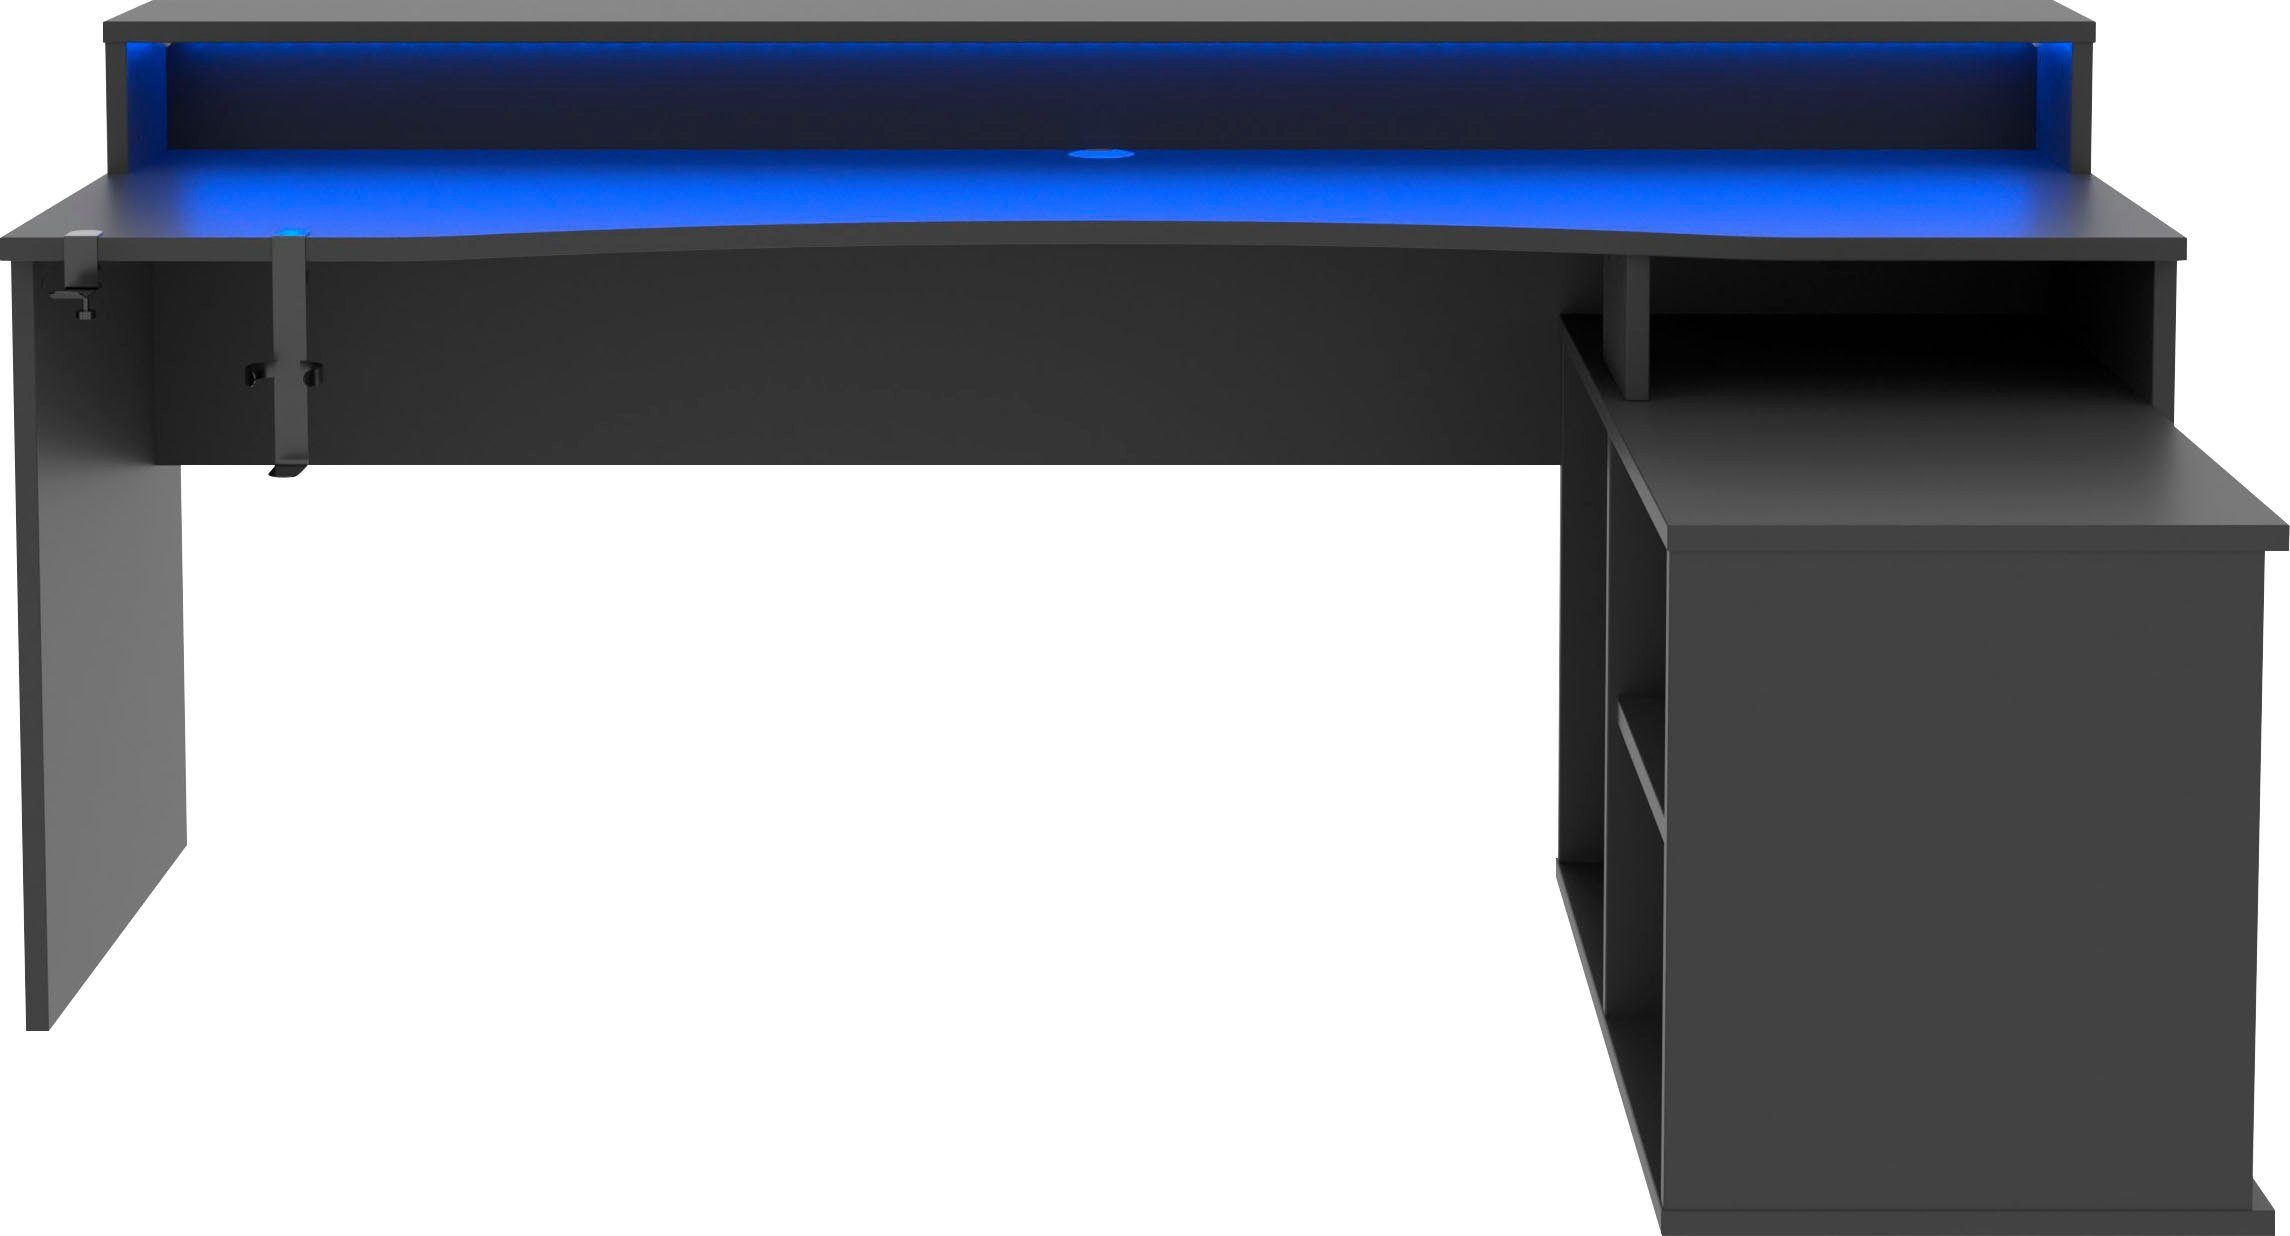 FORTE Gamingtisch Tezaur, Eckschreibtisch mit RGB-Beleuchtung, Tower  rechts/links montierbar, Inklusive RGB-Streifenbeleuchtung/USB wechselbare  Farben